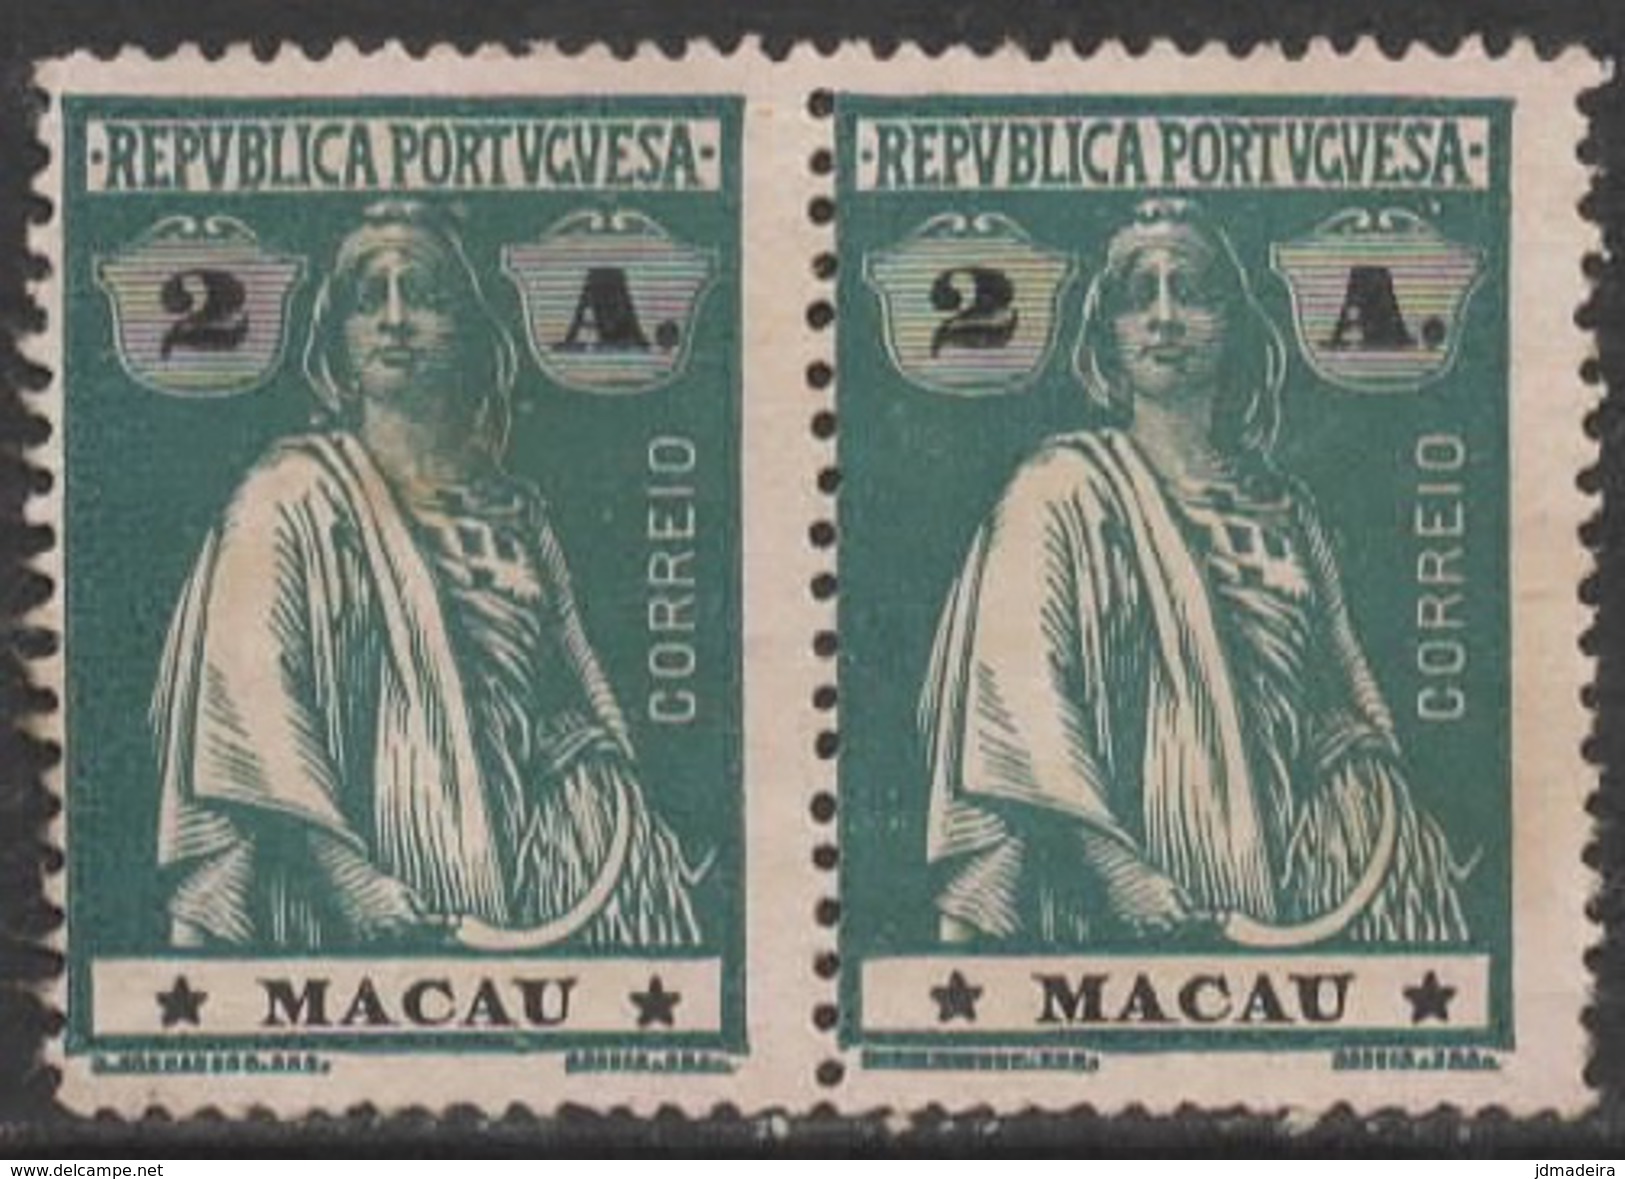 Macao Macau &ndash; 1913 Ceres Type 2 Avos - Unused Stamps